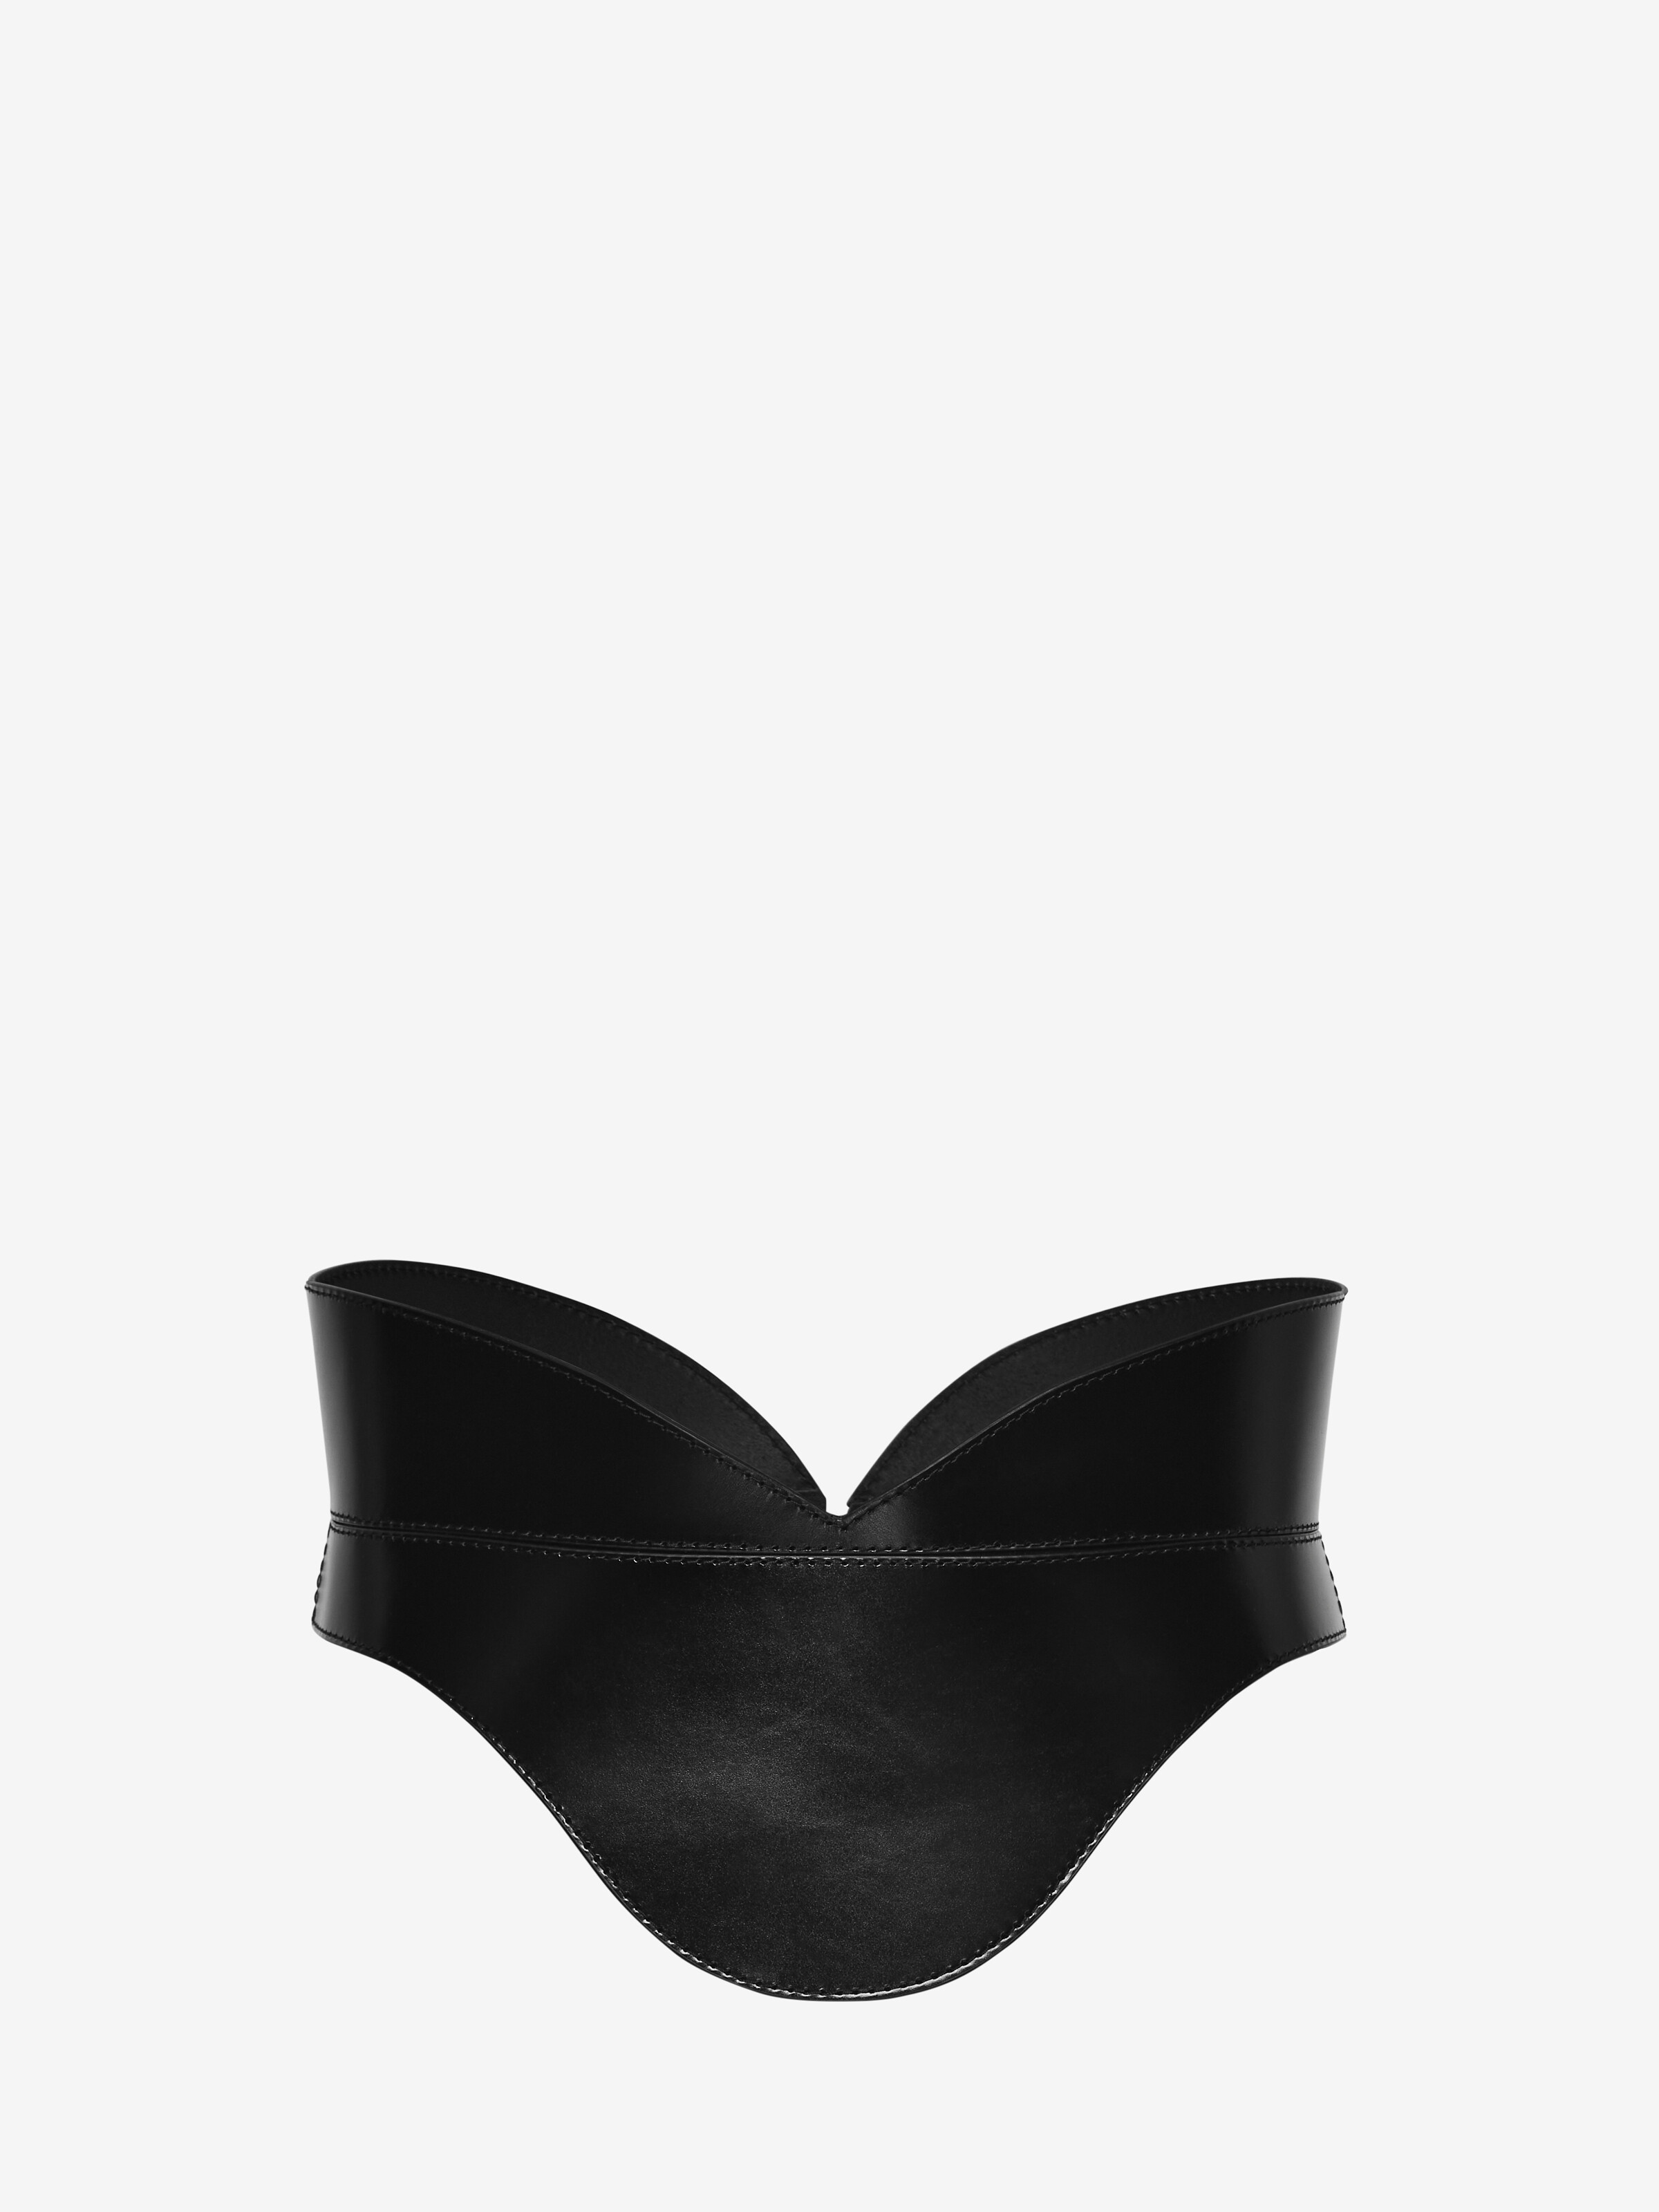 Alexander McQueen Zip-up Leather Bra Top in Black